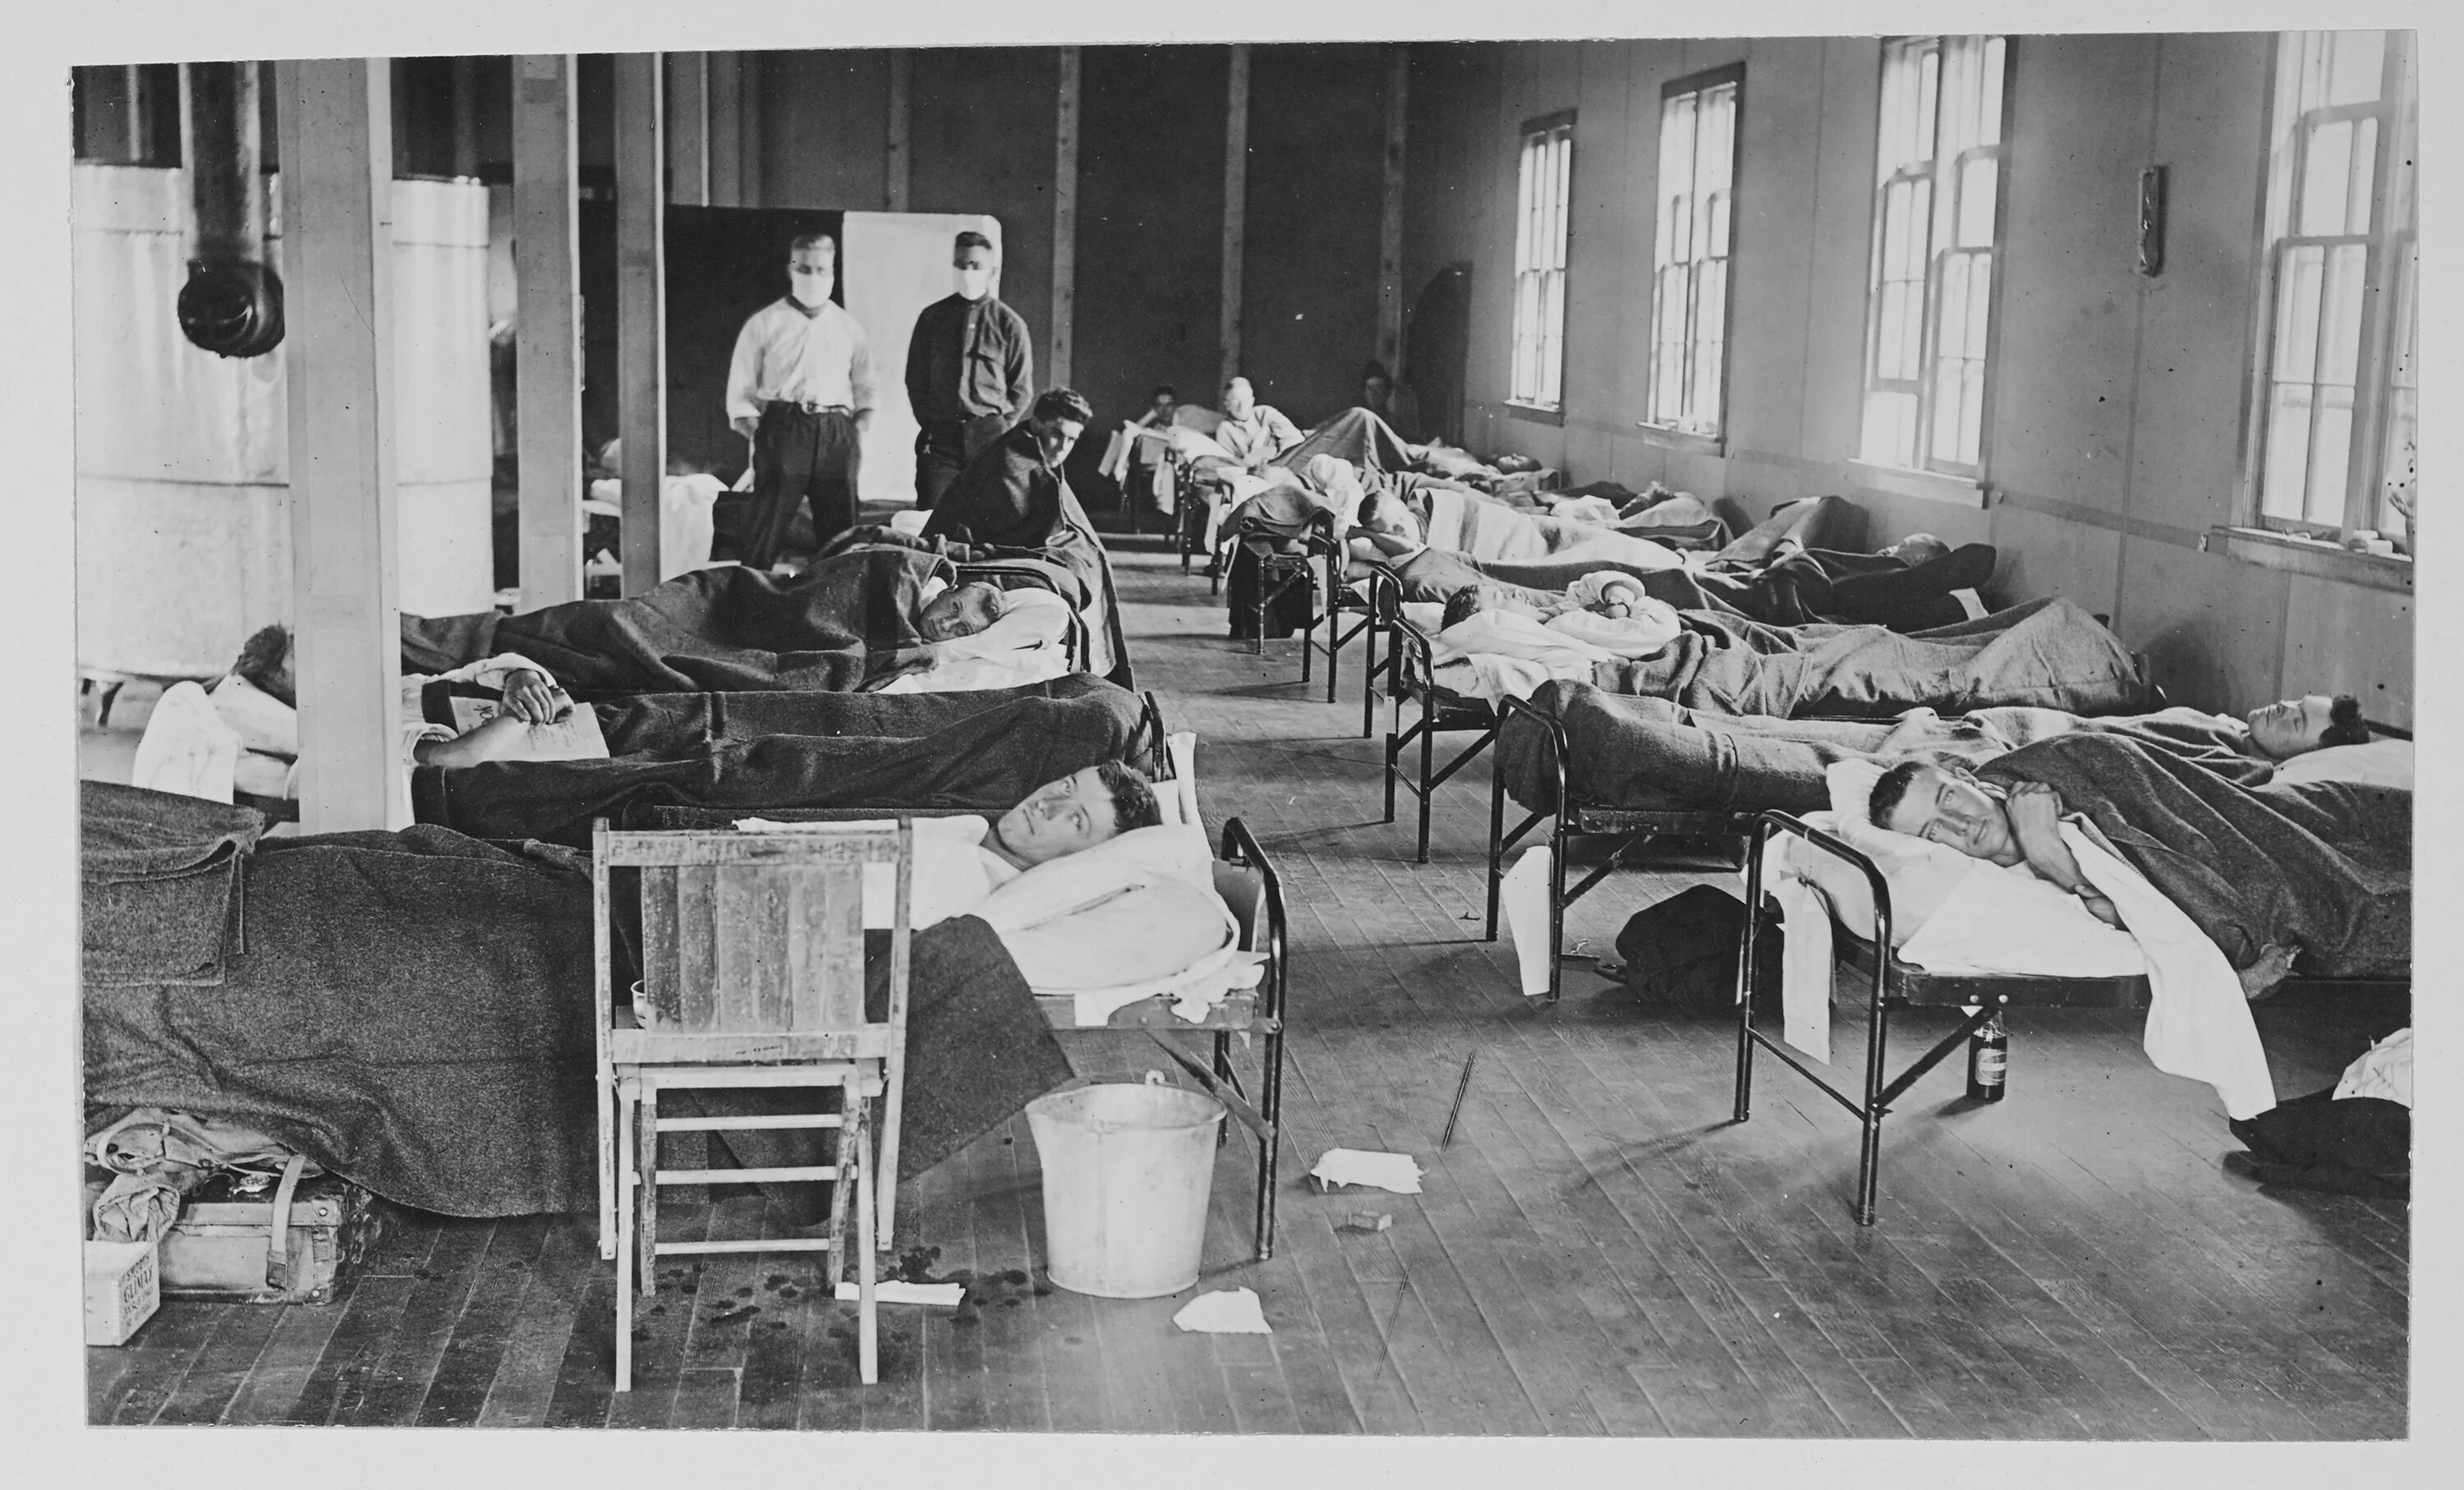 Грипп 1918. Пандемия испанка испанка. Эпидемия 1918 года в мире испанка грипп. Испанка, 1918 - 20, Пандемия гриппа.